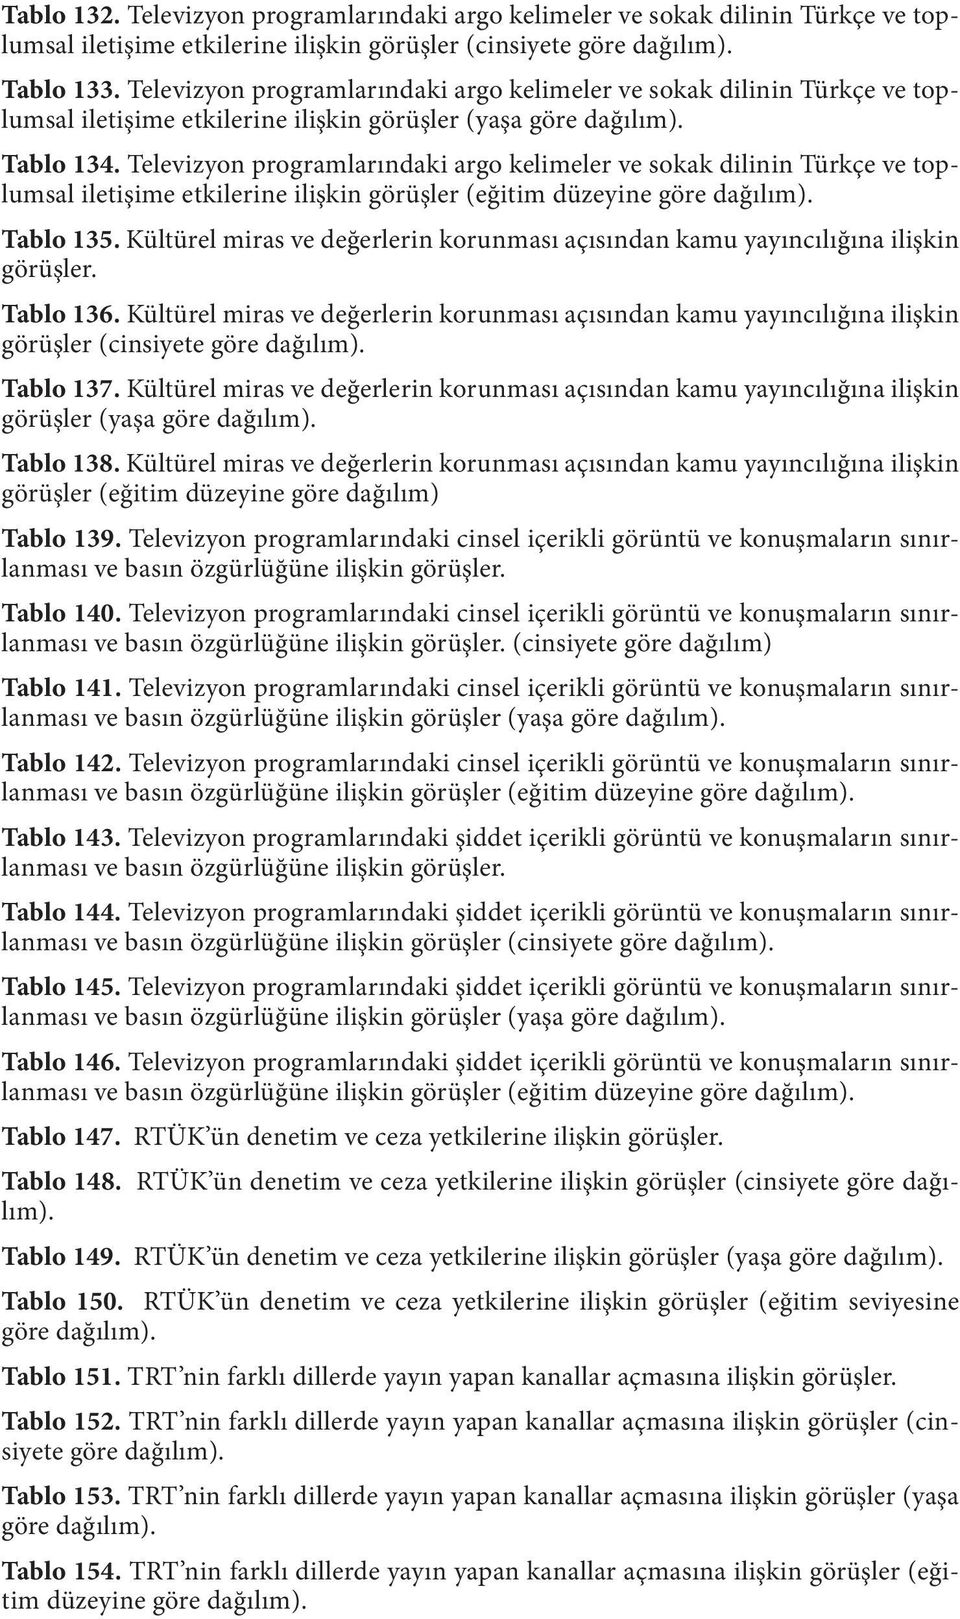 Televizyon programlarındaki argo kelimeler ve sokak dilinin Türkçe ve toplumsal iletişime etkilerine ilişkin görüşler (eğitim düzeyine göre dağılım). Tablo 135.